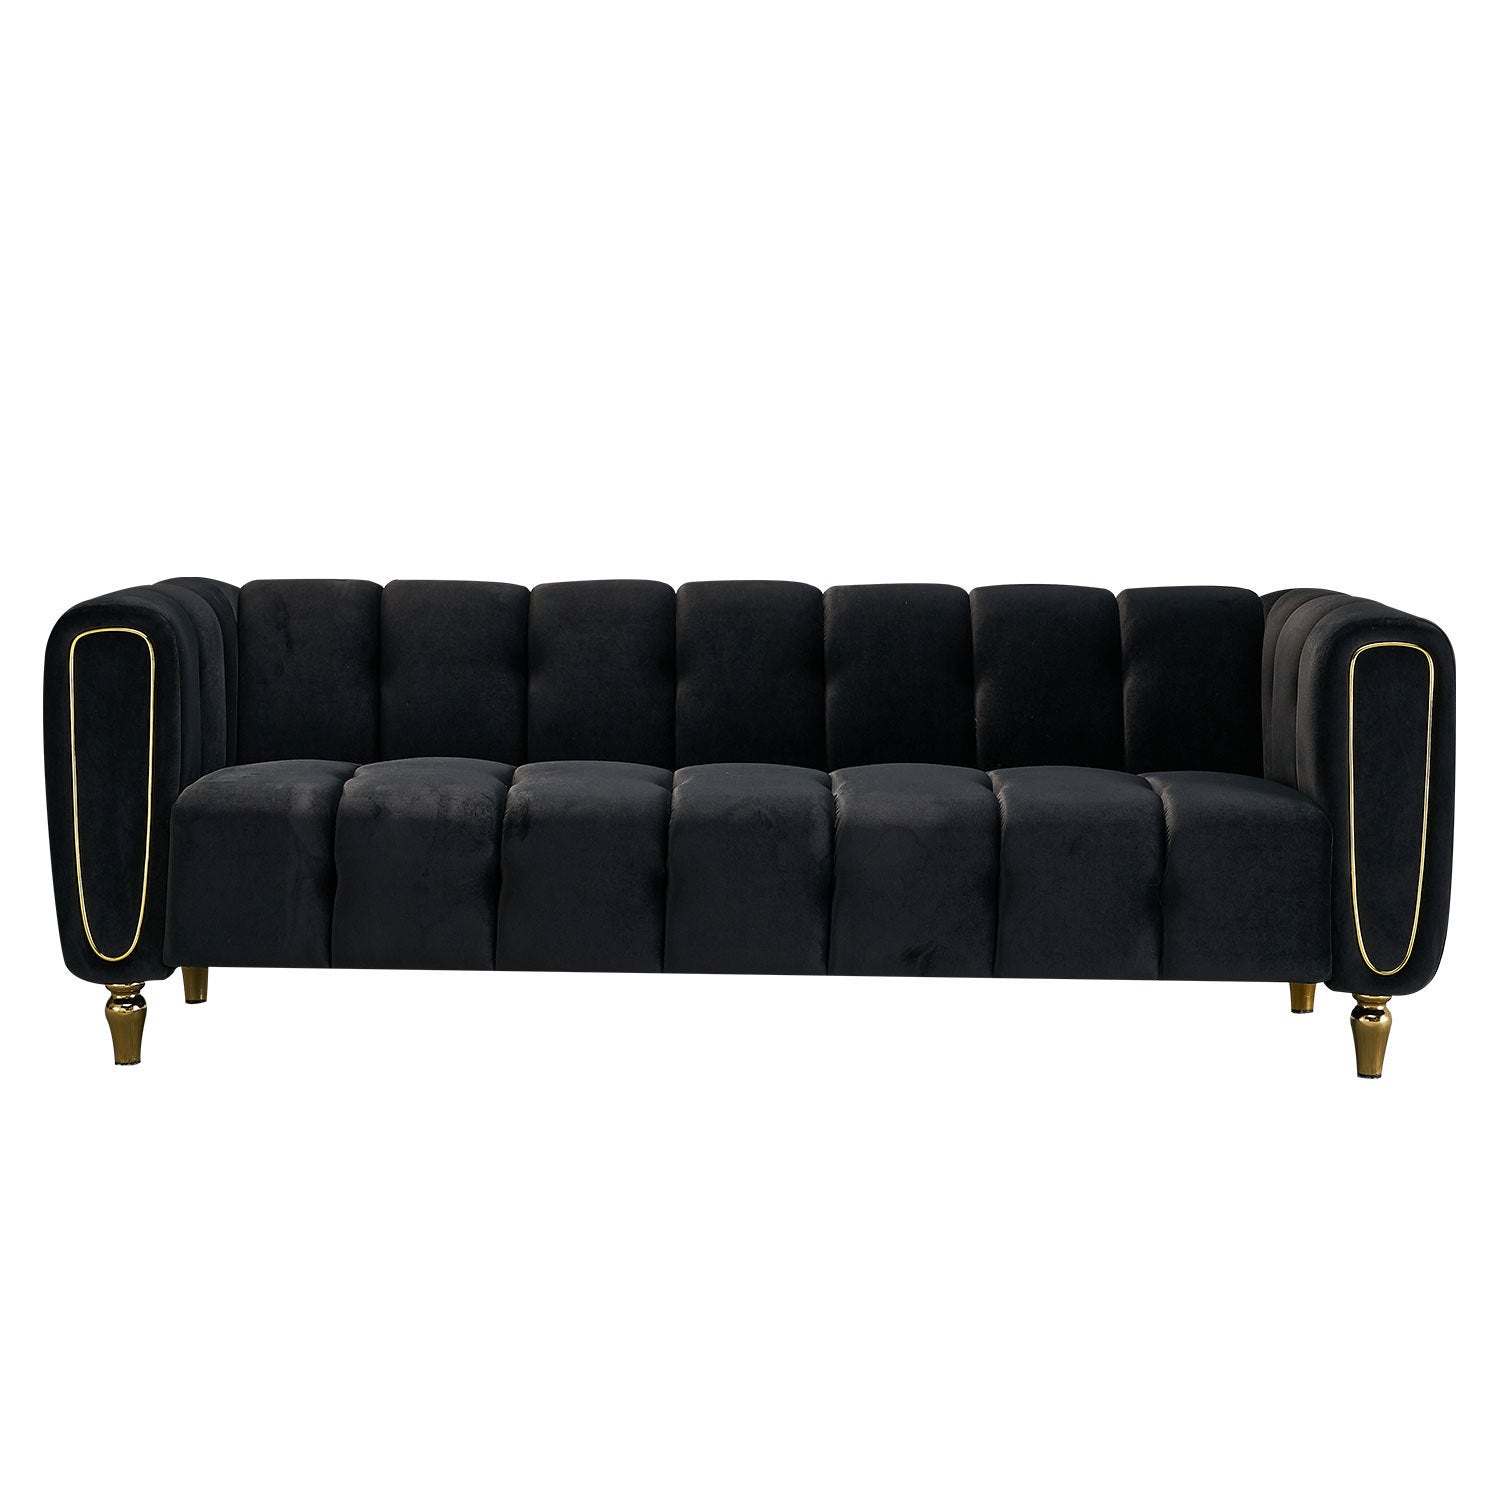 Modern Velvet Sofa 83.07 inch for Living Room Black Color - Enova Luxe Home Store